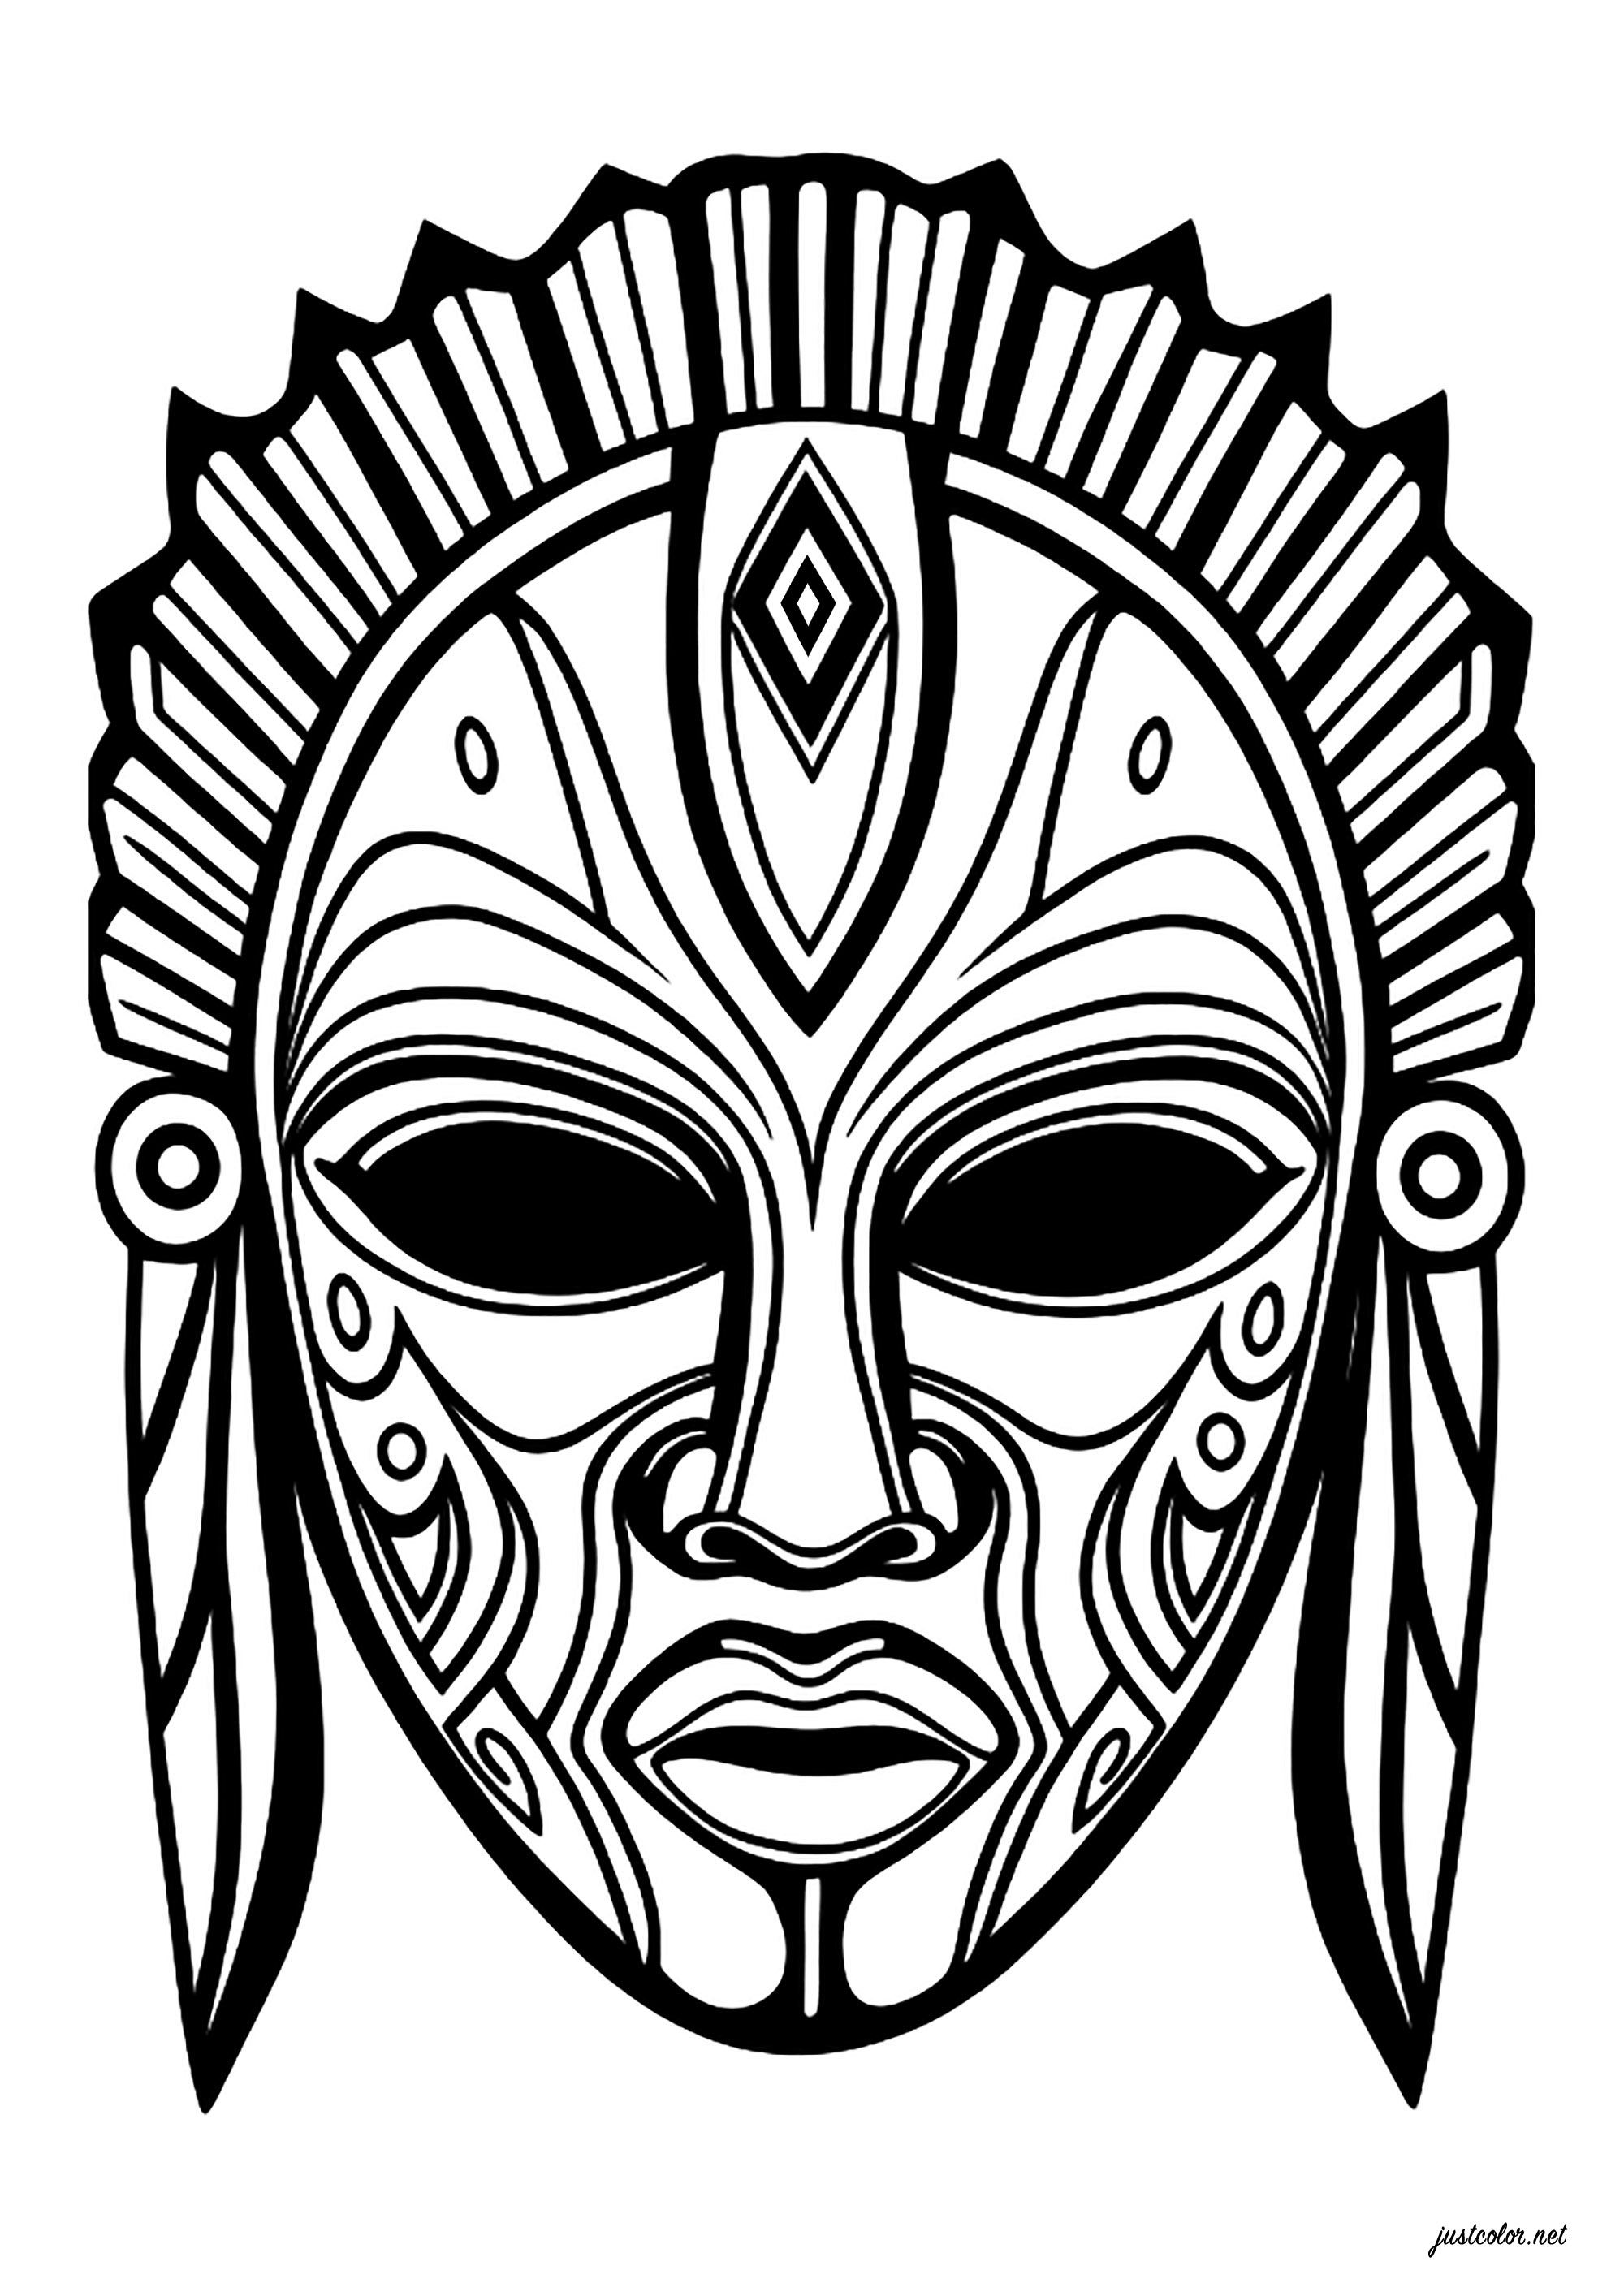 Máscara imaginaria, inspirada en las máscaras africanas. Numerosos motivos interiores, que permiten colorear la máscara en una amplia gama de colores